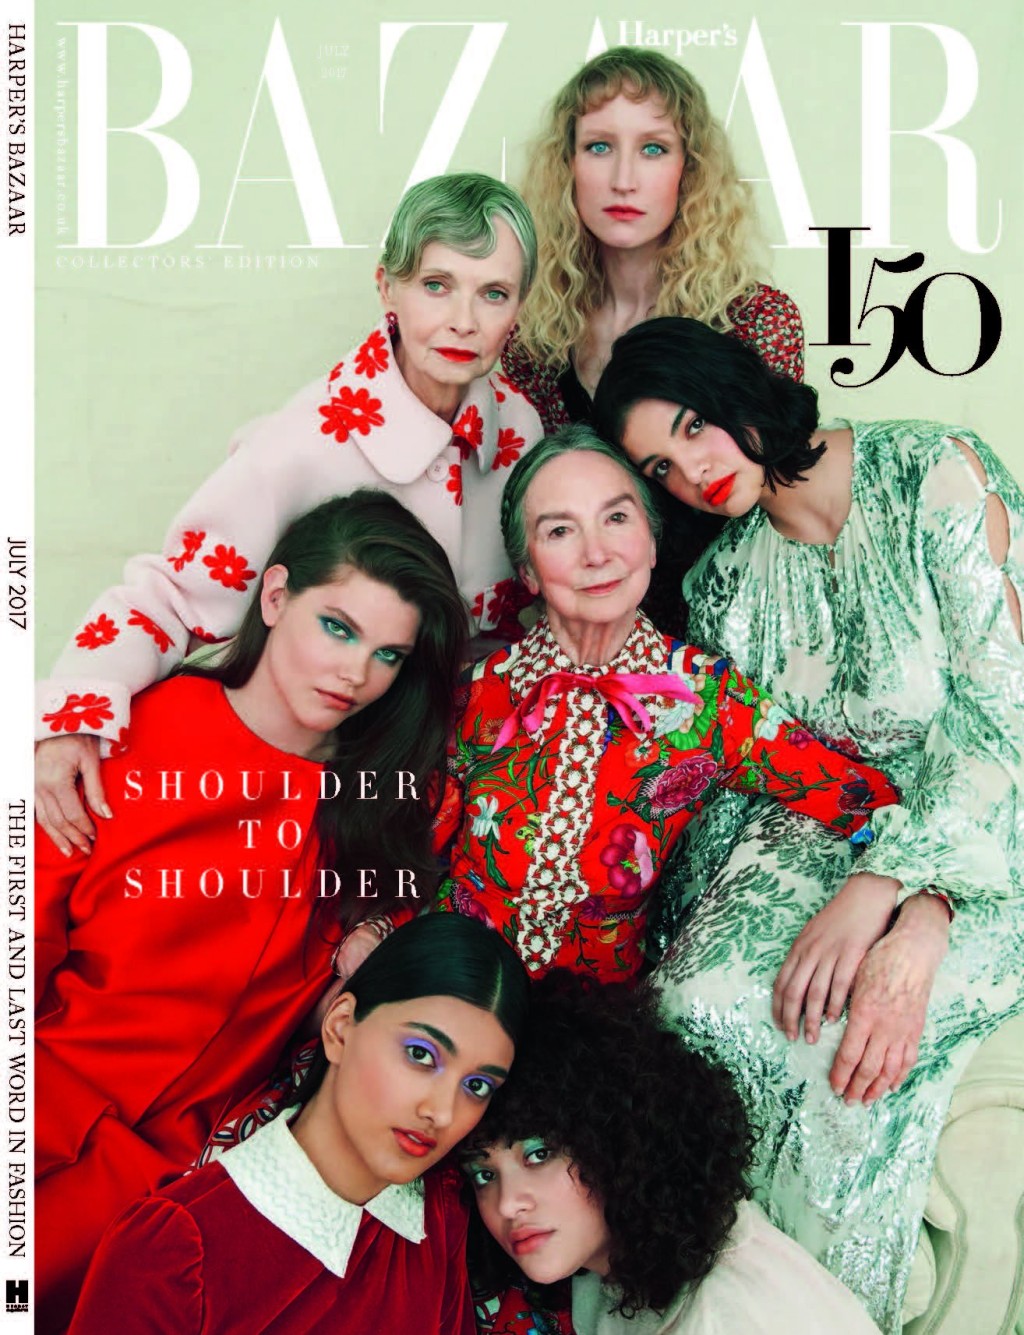 Frances Dunscombe登上英國Harper’s Bazaar封面。 網上圖片